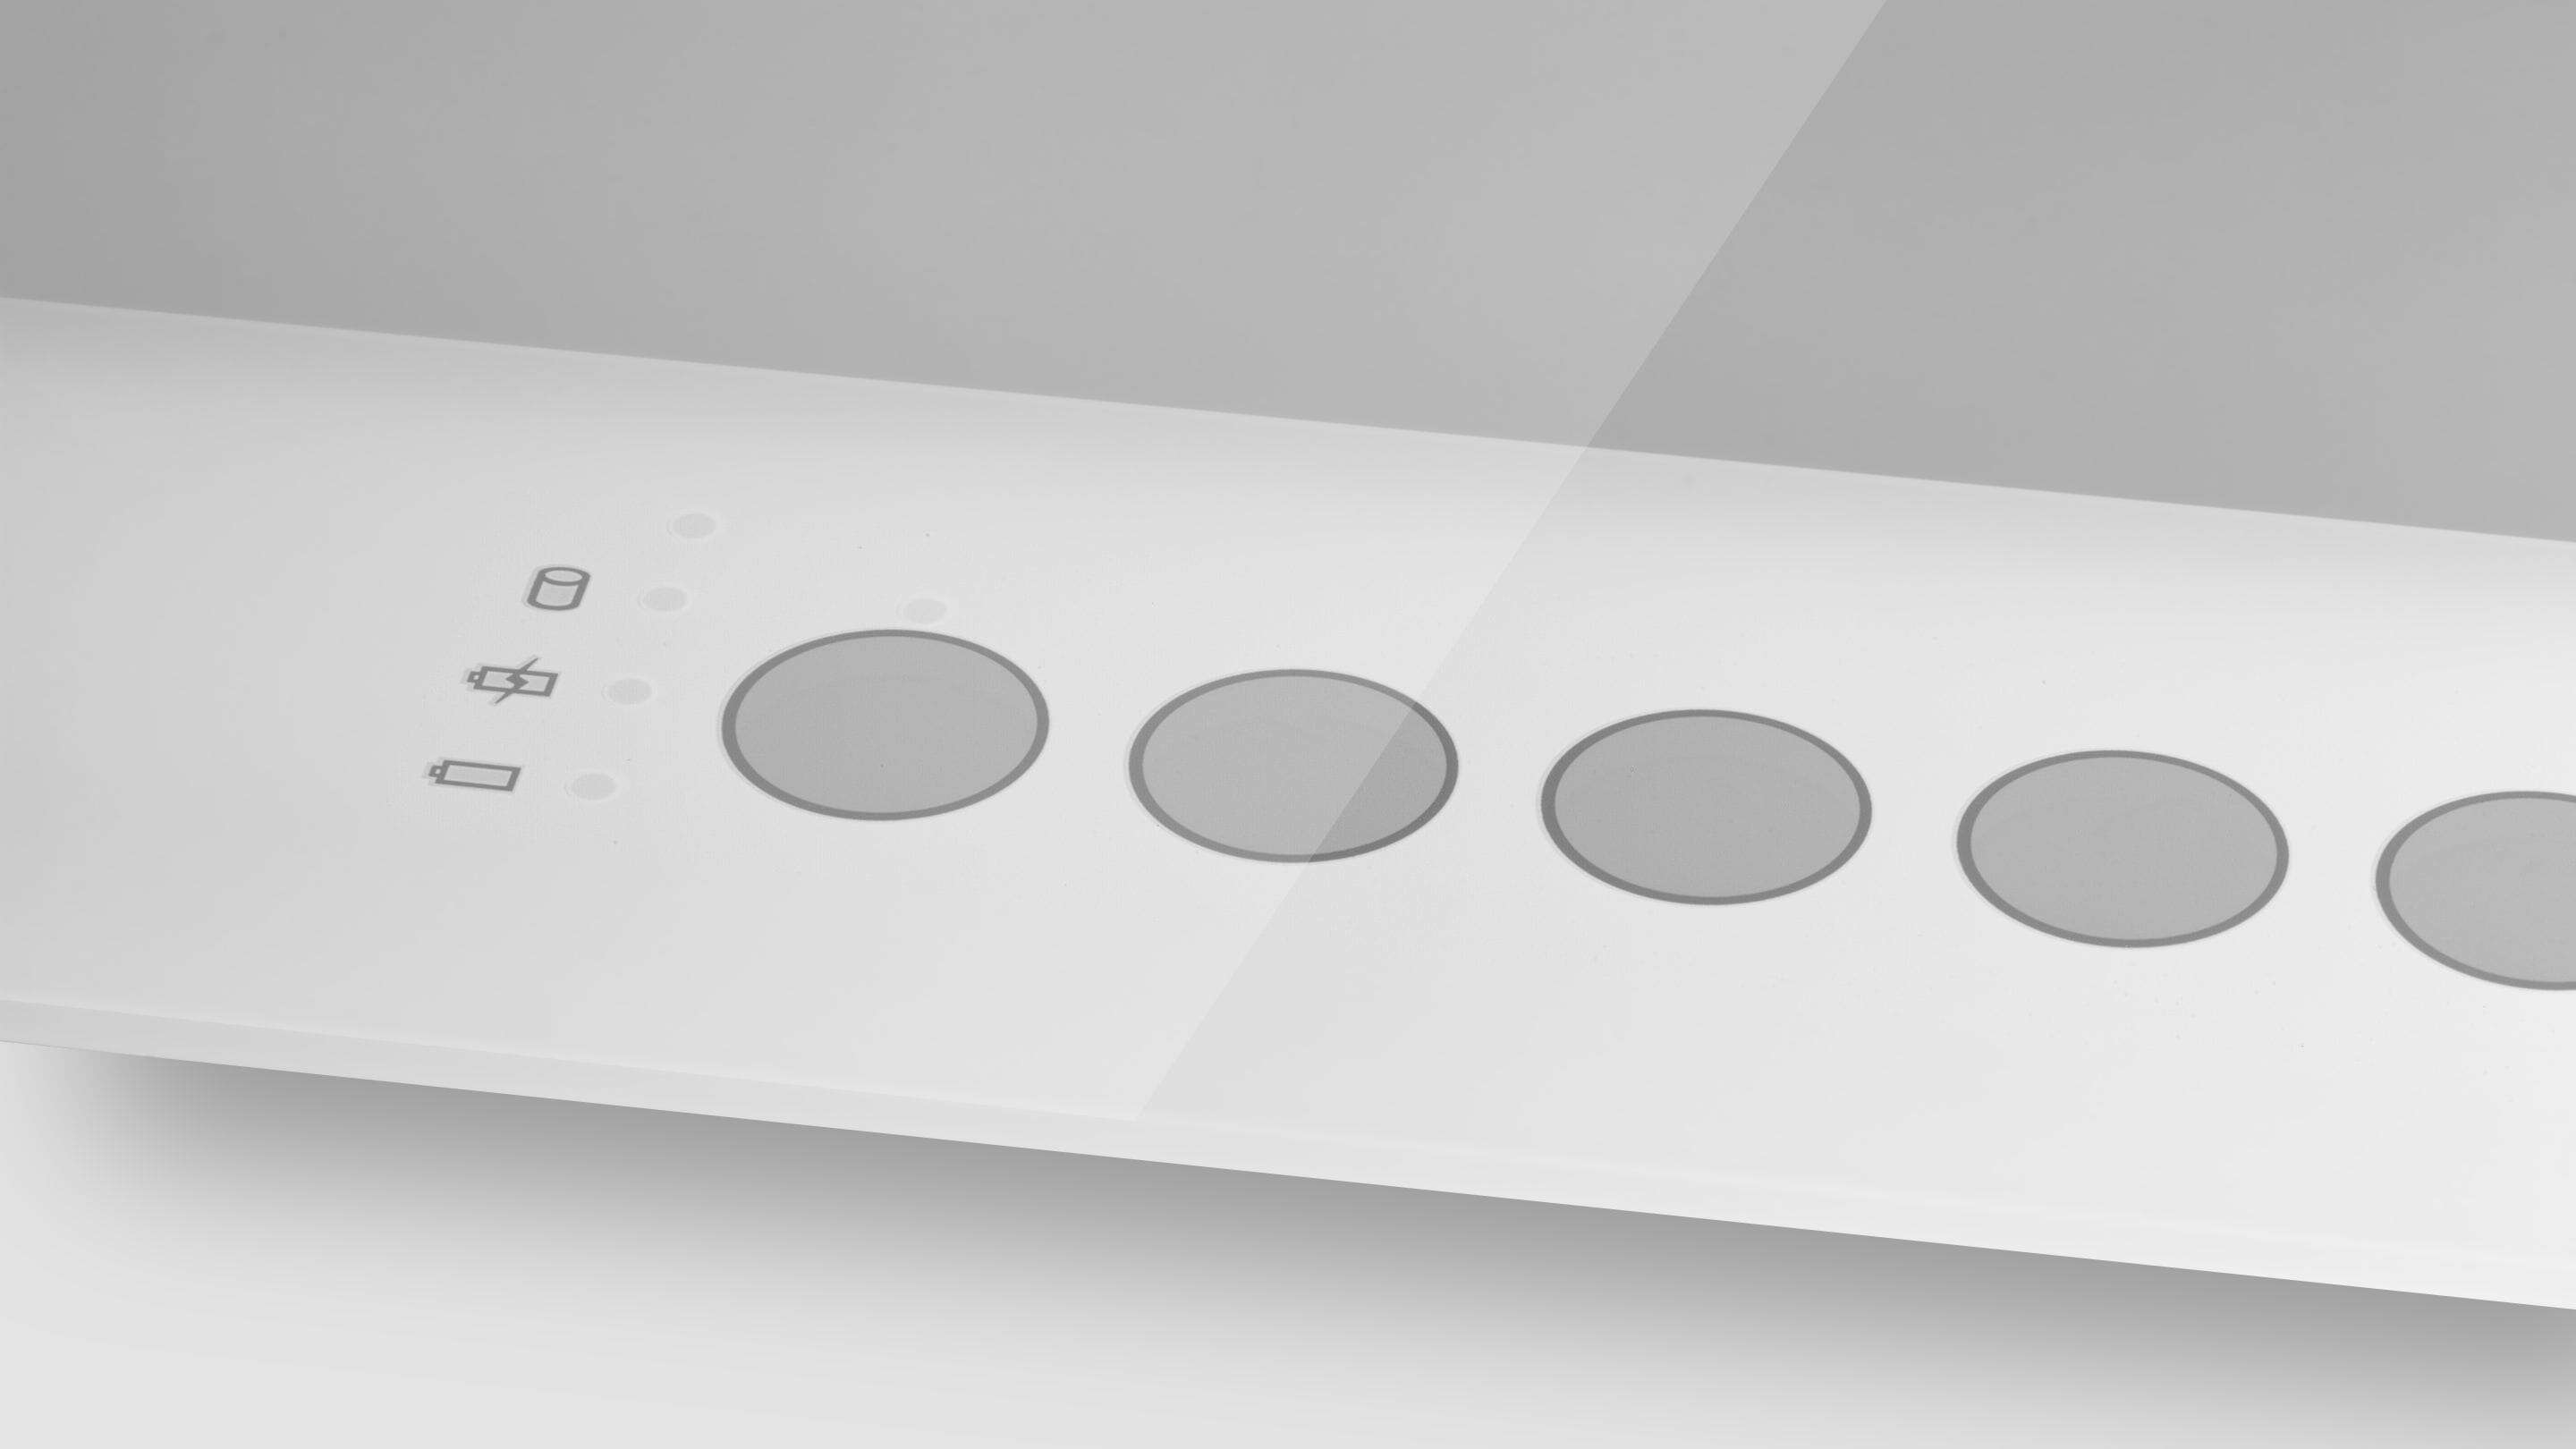 صفحه نمایش لمسی PCAP - دکمه های شیشه ای چاپ شده یک شی مستطیل شکل سفید با دایره بر روی ان